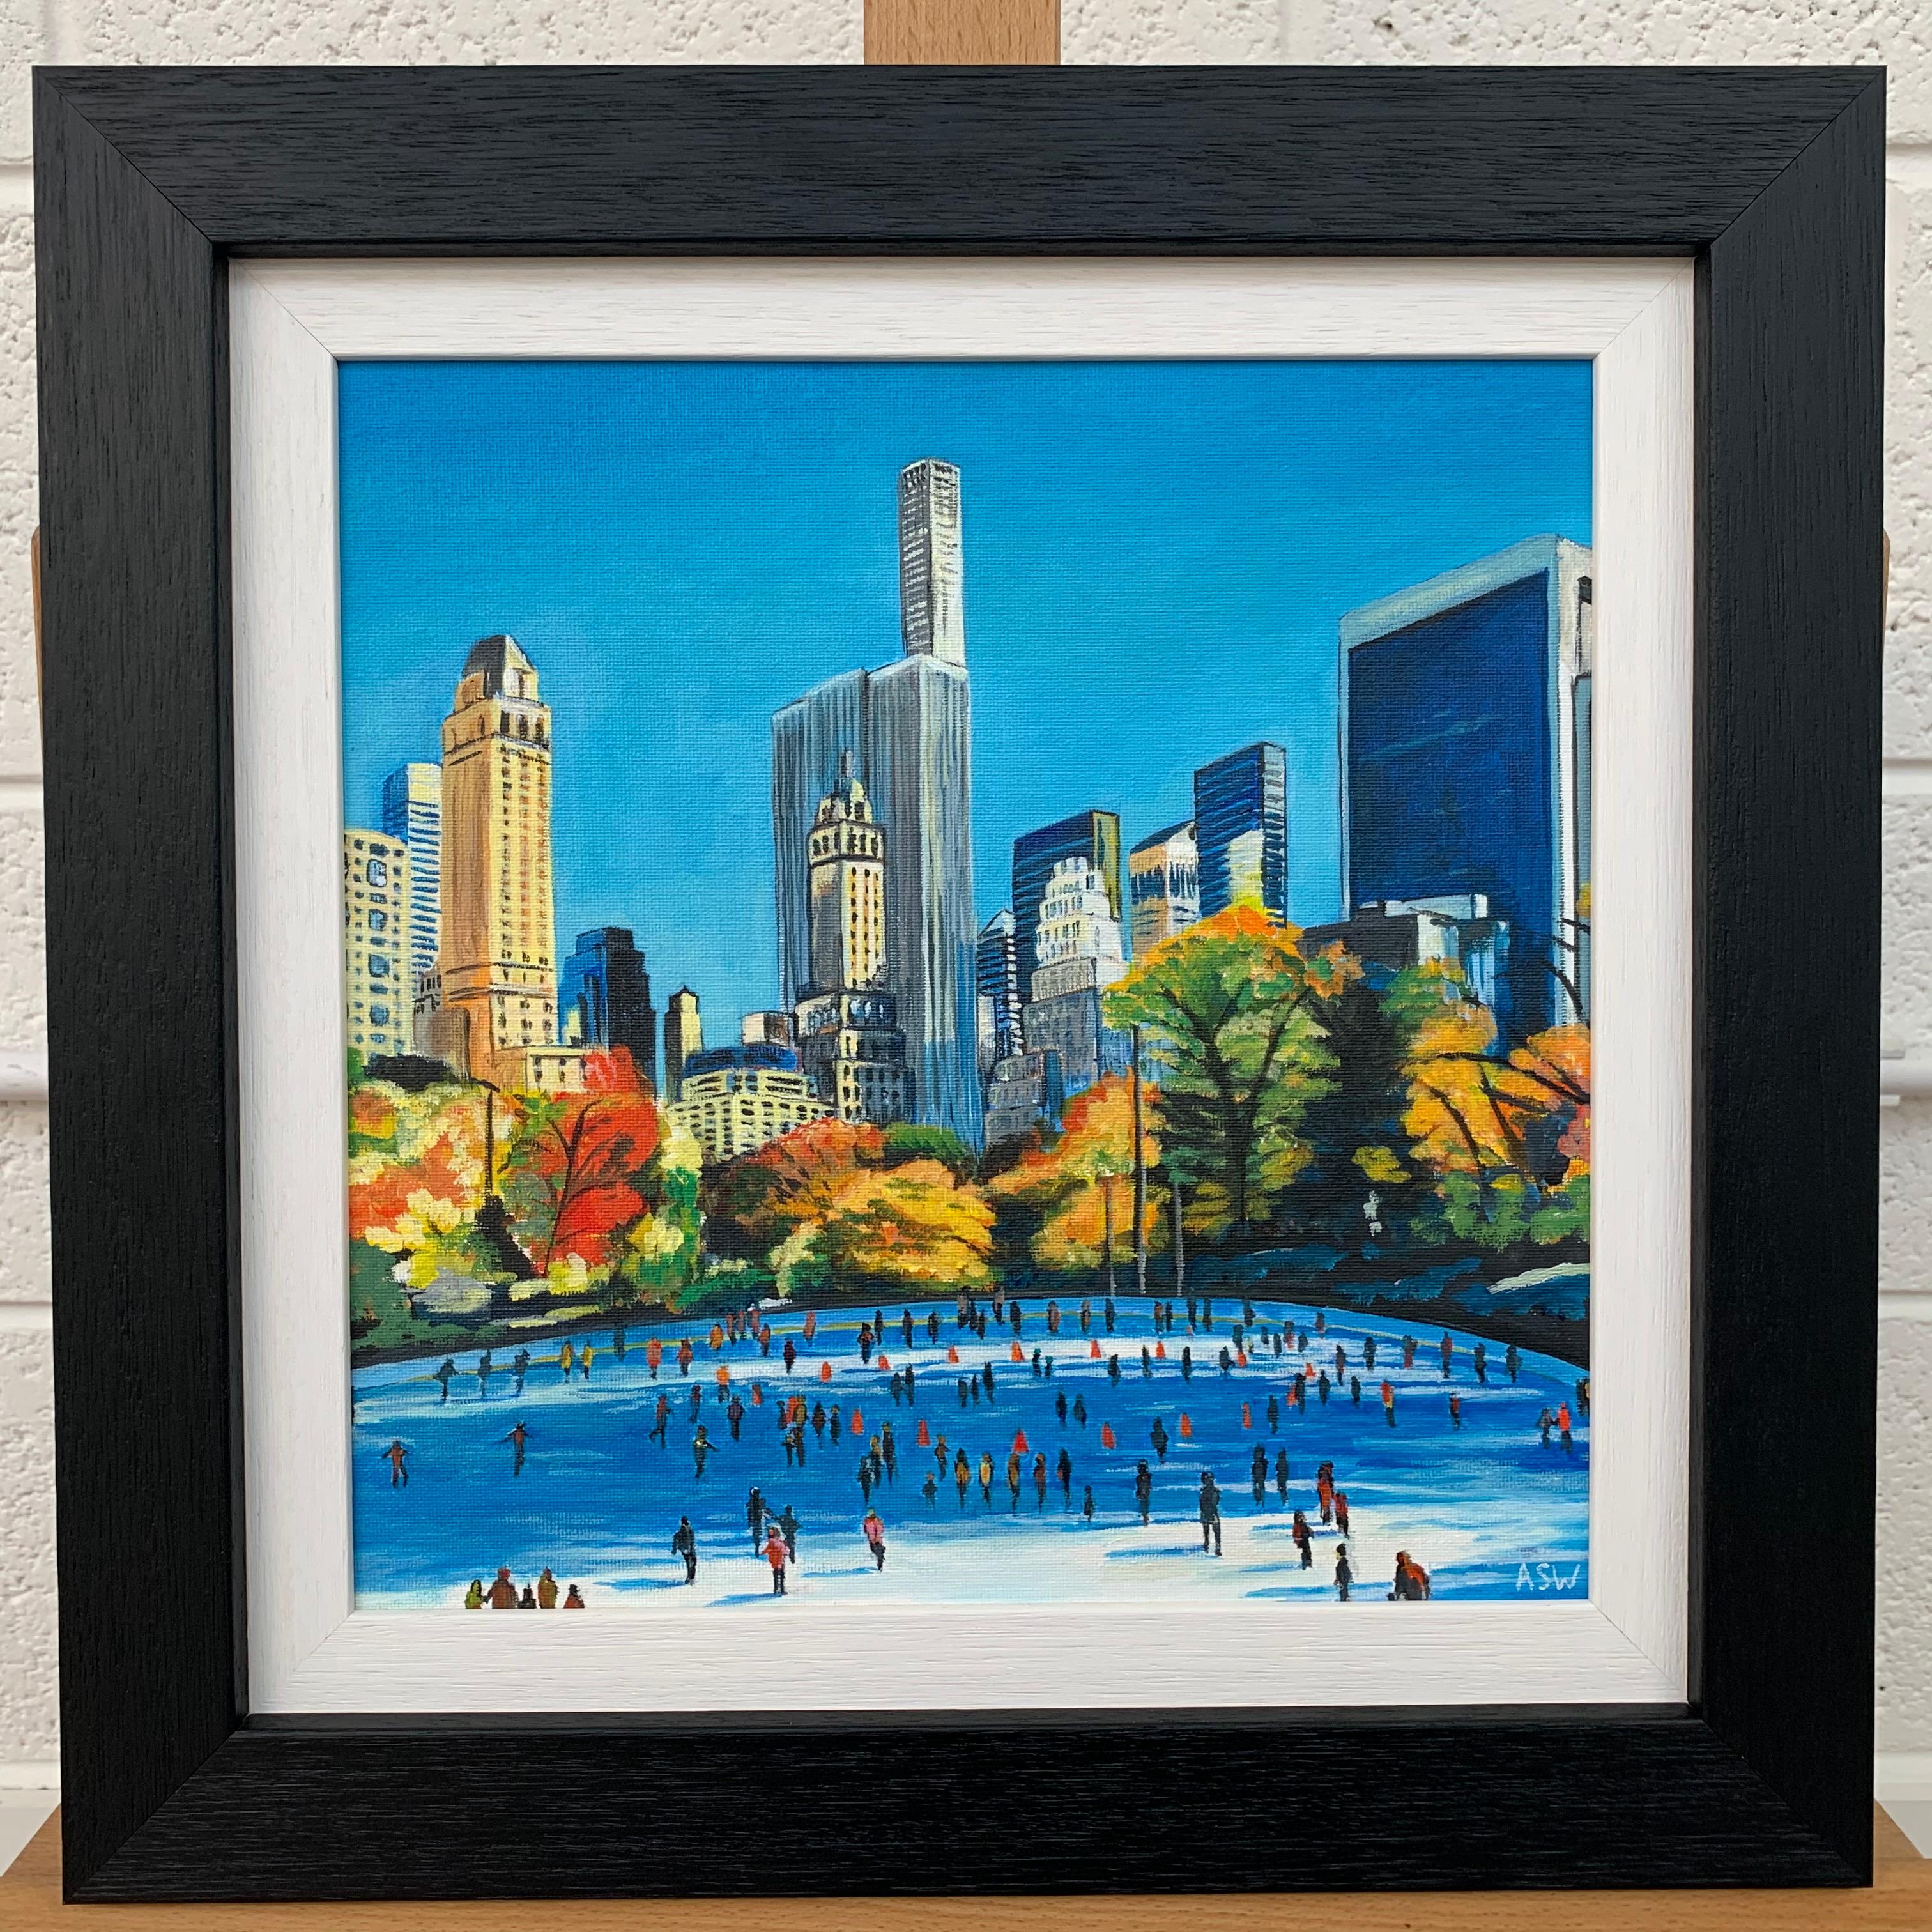 Original-Gemälde von Skatern im Central Park New York City Herbst, von führenden britischen Cityscape Künstler, Angela Wakefield.

Kunst misst 12 x 12 Zoll
Rahmen misst 16 x 16 Zoll

Angela Wakefield war zweimal auf dem Titelblatt von 